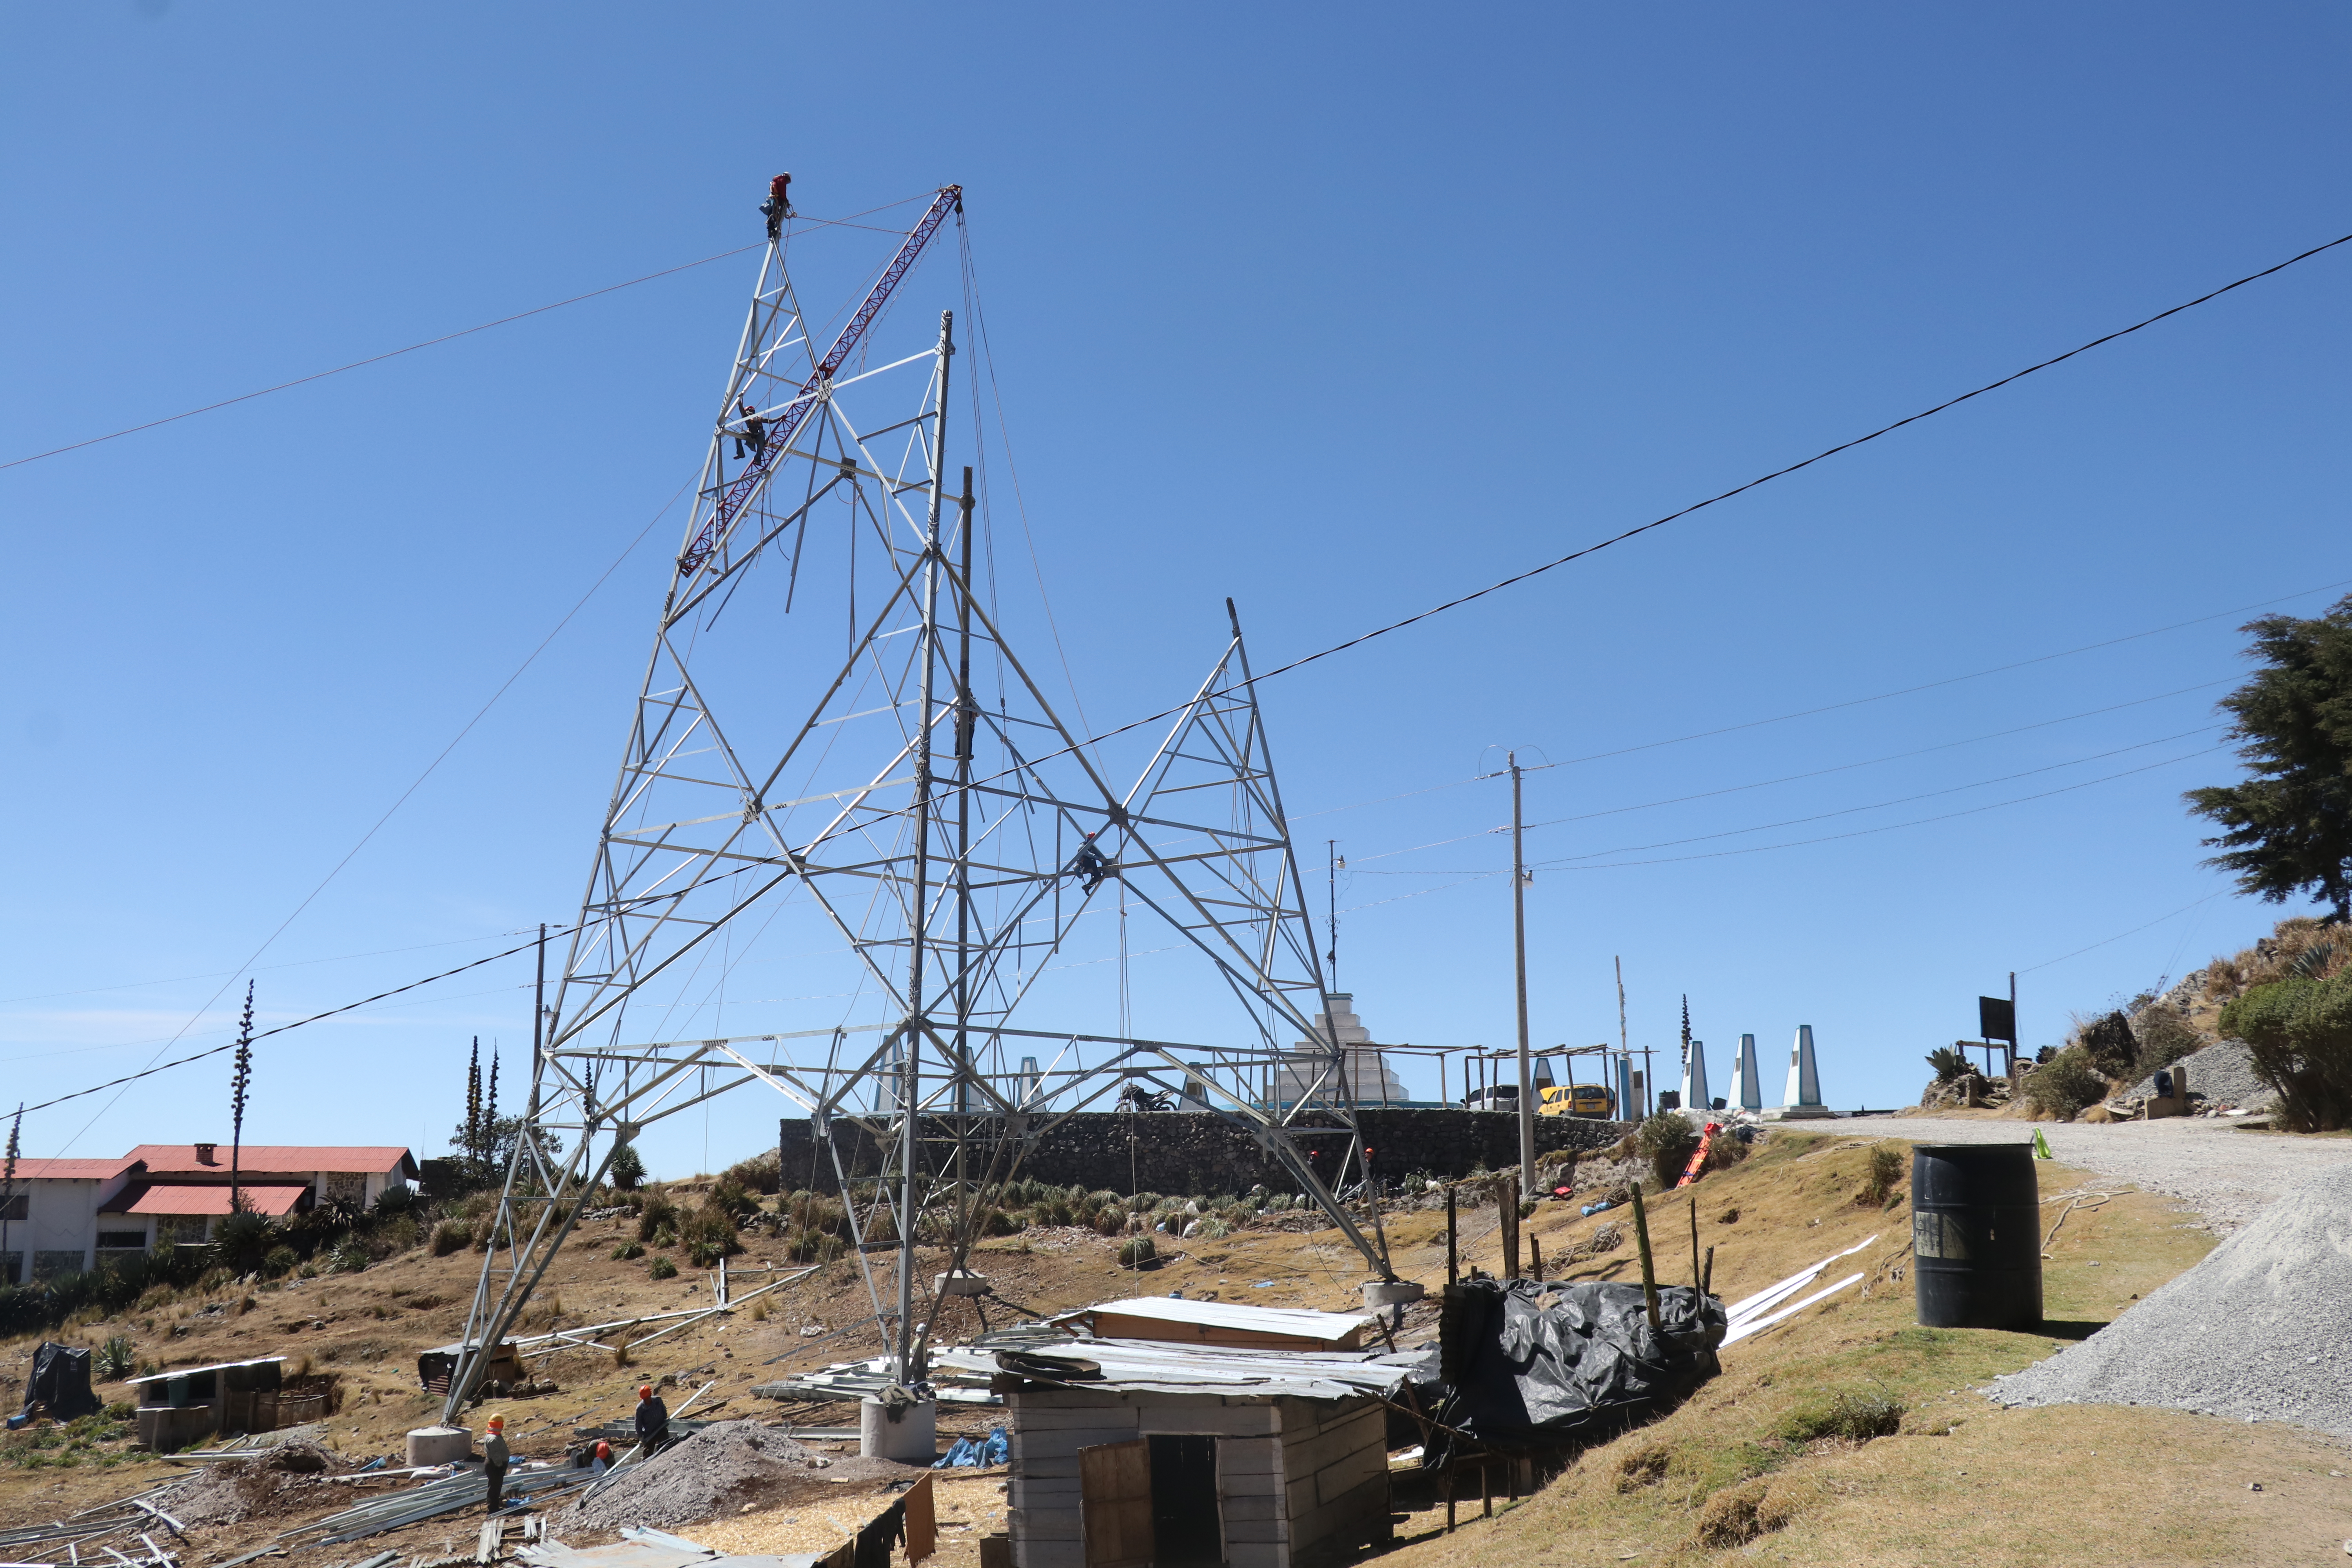 Empleados de Trecsa construyen de una torre de electricidad en el mirador Juan Diéguez Olaverri en Chiantla, Huehuetenango. (Foto Prensa Libre: Mike Castillo)